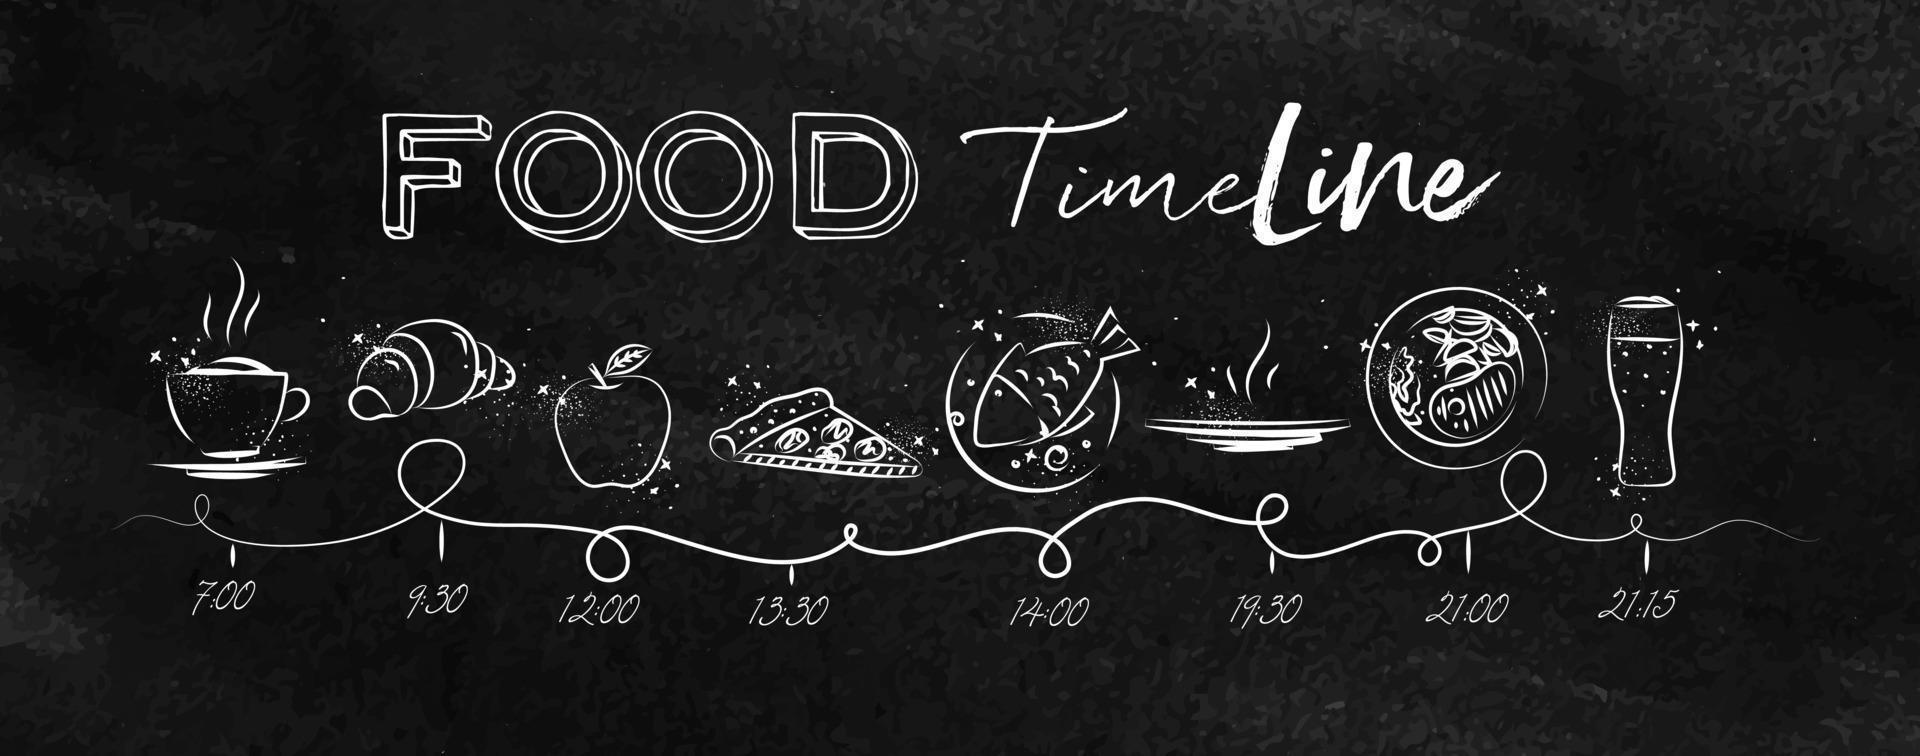 linha do tempo sobre o tema da comida saudável ilustrou o tempo da refeição e os ícones de comida desenhando com giz no quadro-negro vetor